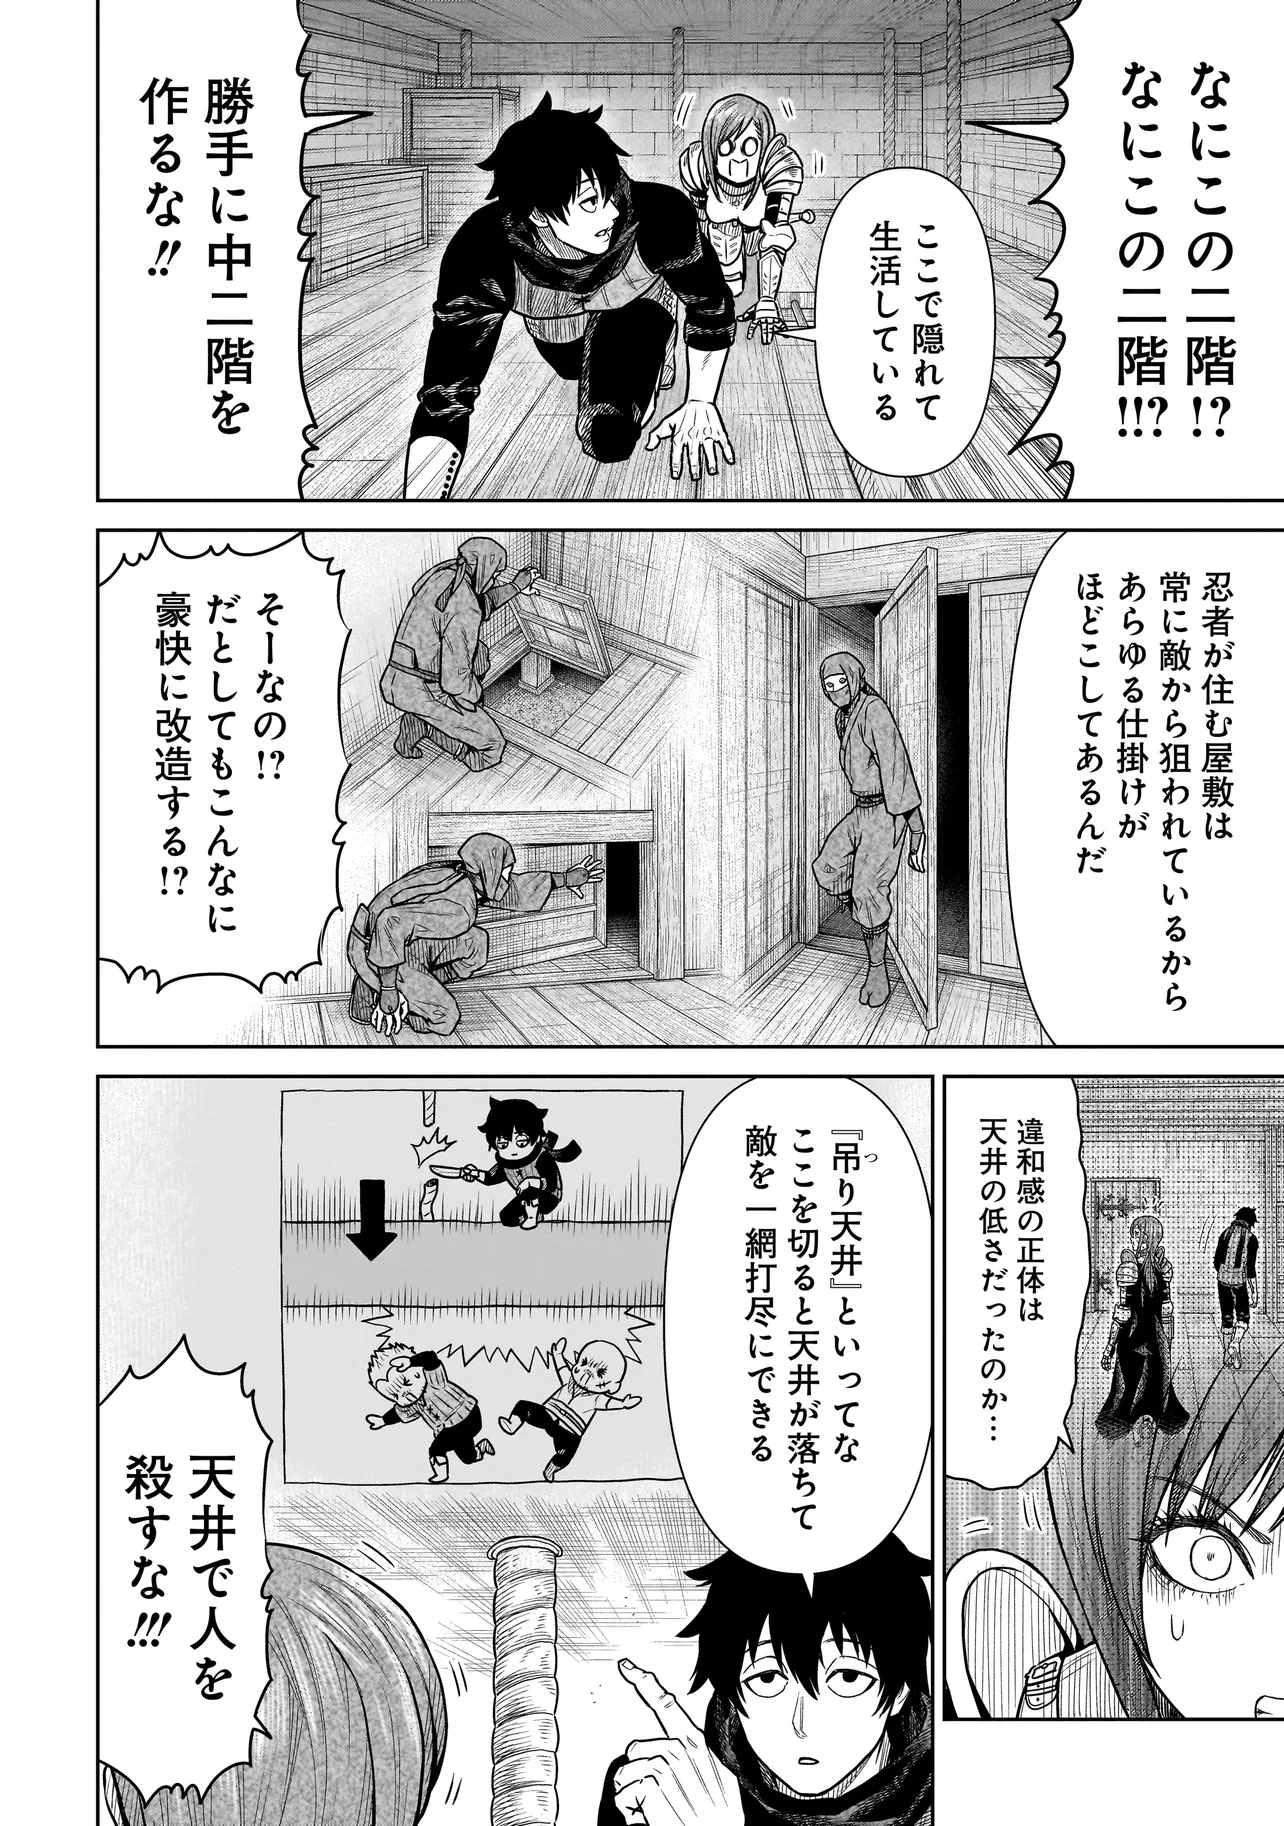 Ninja no Kishi - Chapter 2 - Page 14